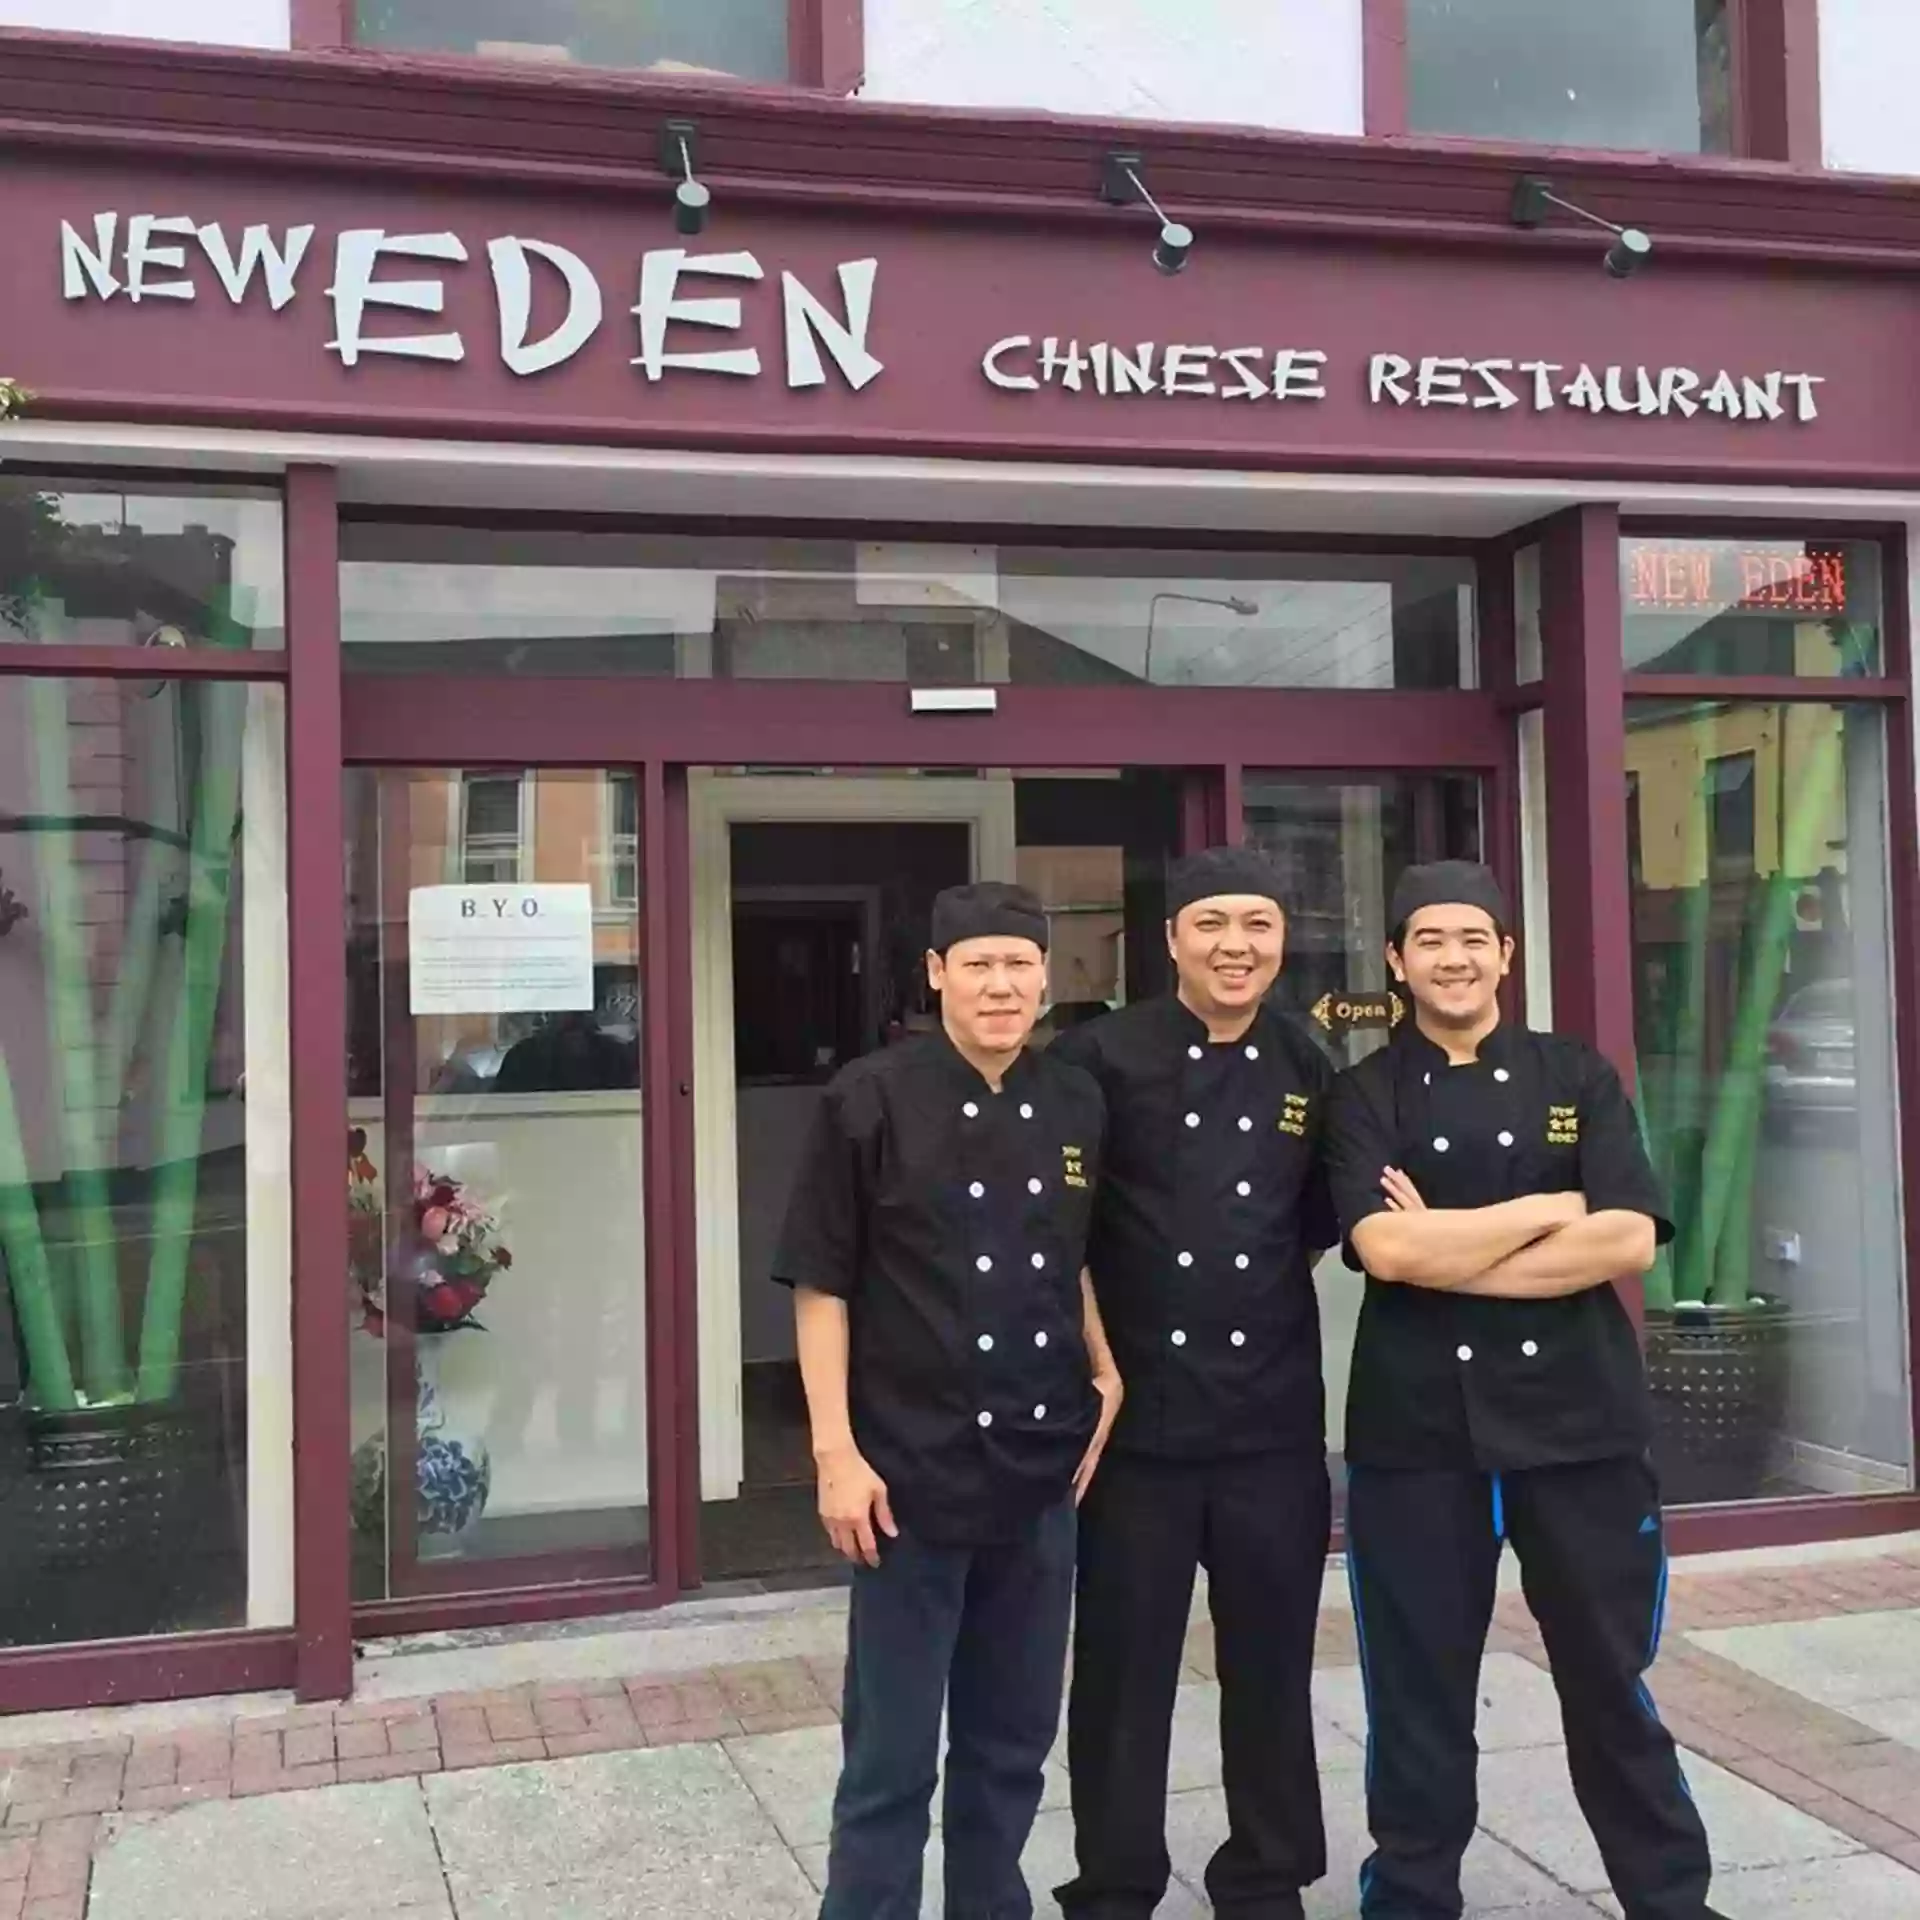 New Eden Chinese Restaurant